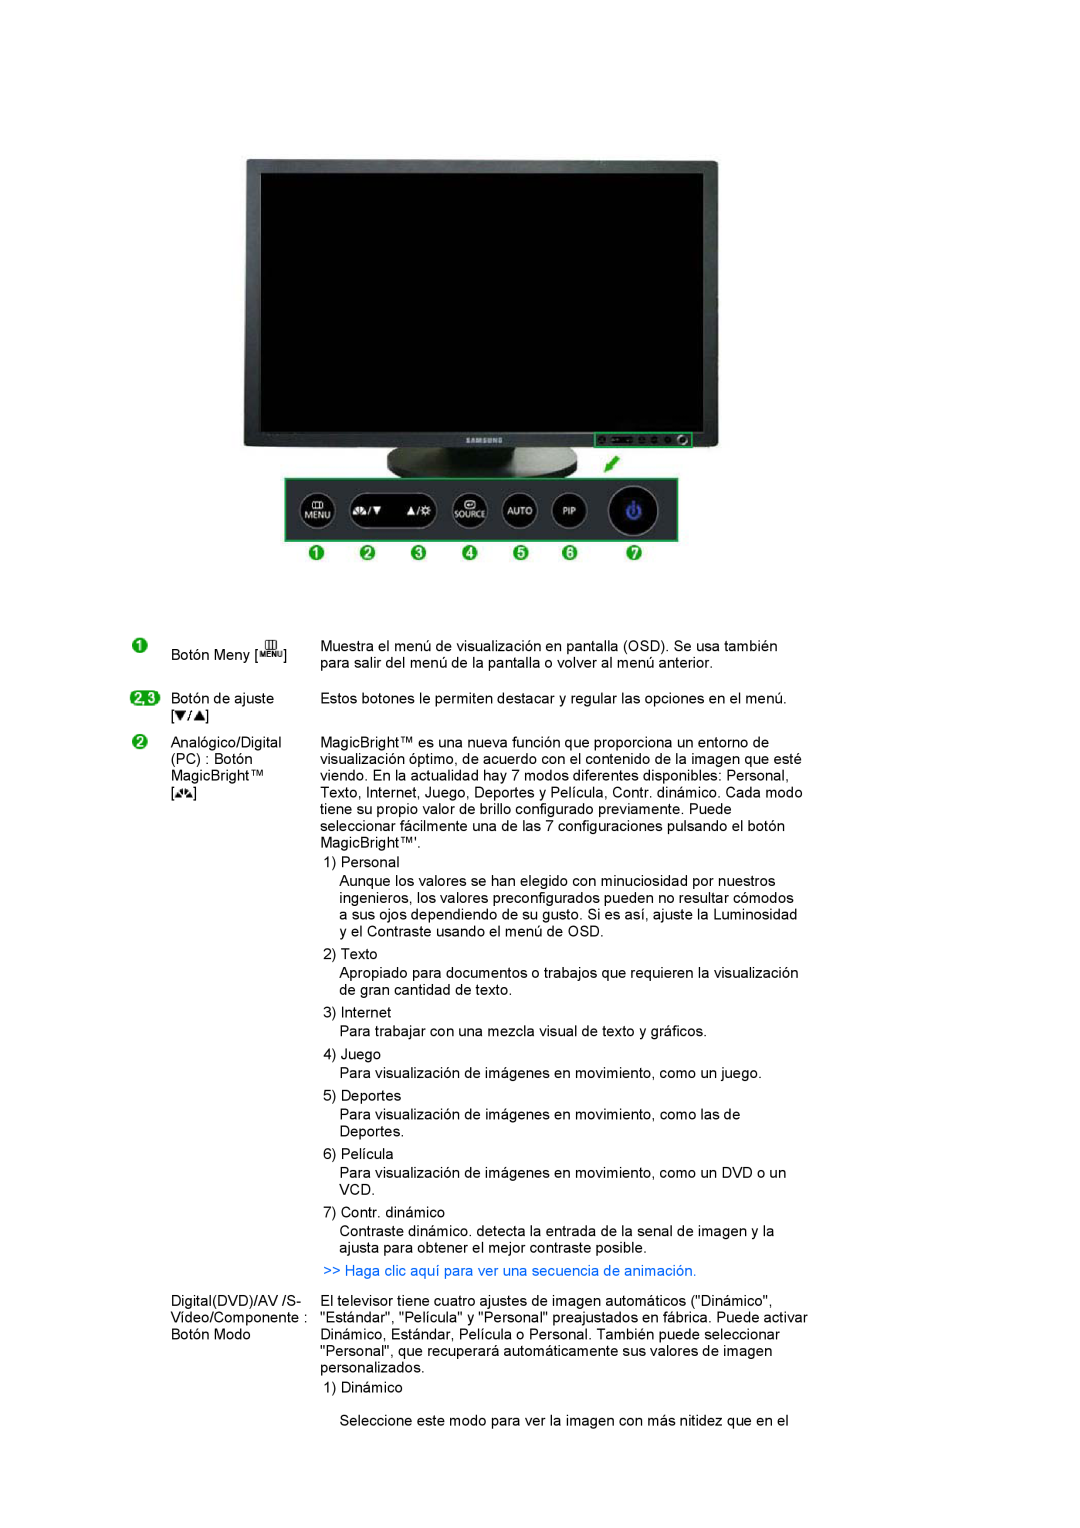 Samsung LS27HUBCB/EDC, LS27HUBCBS/EDC manual Haga clic aquí para ver una secuencia de animación 